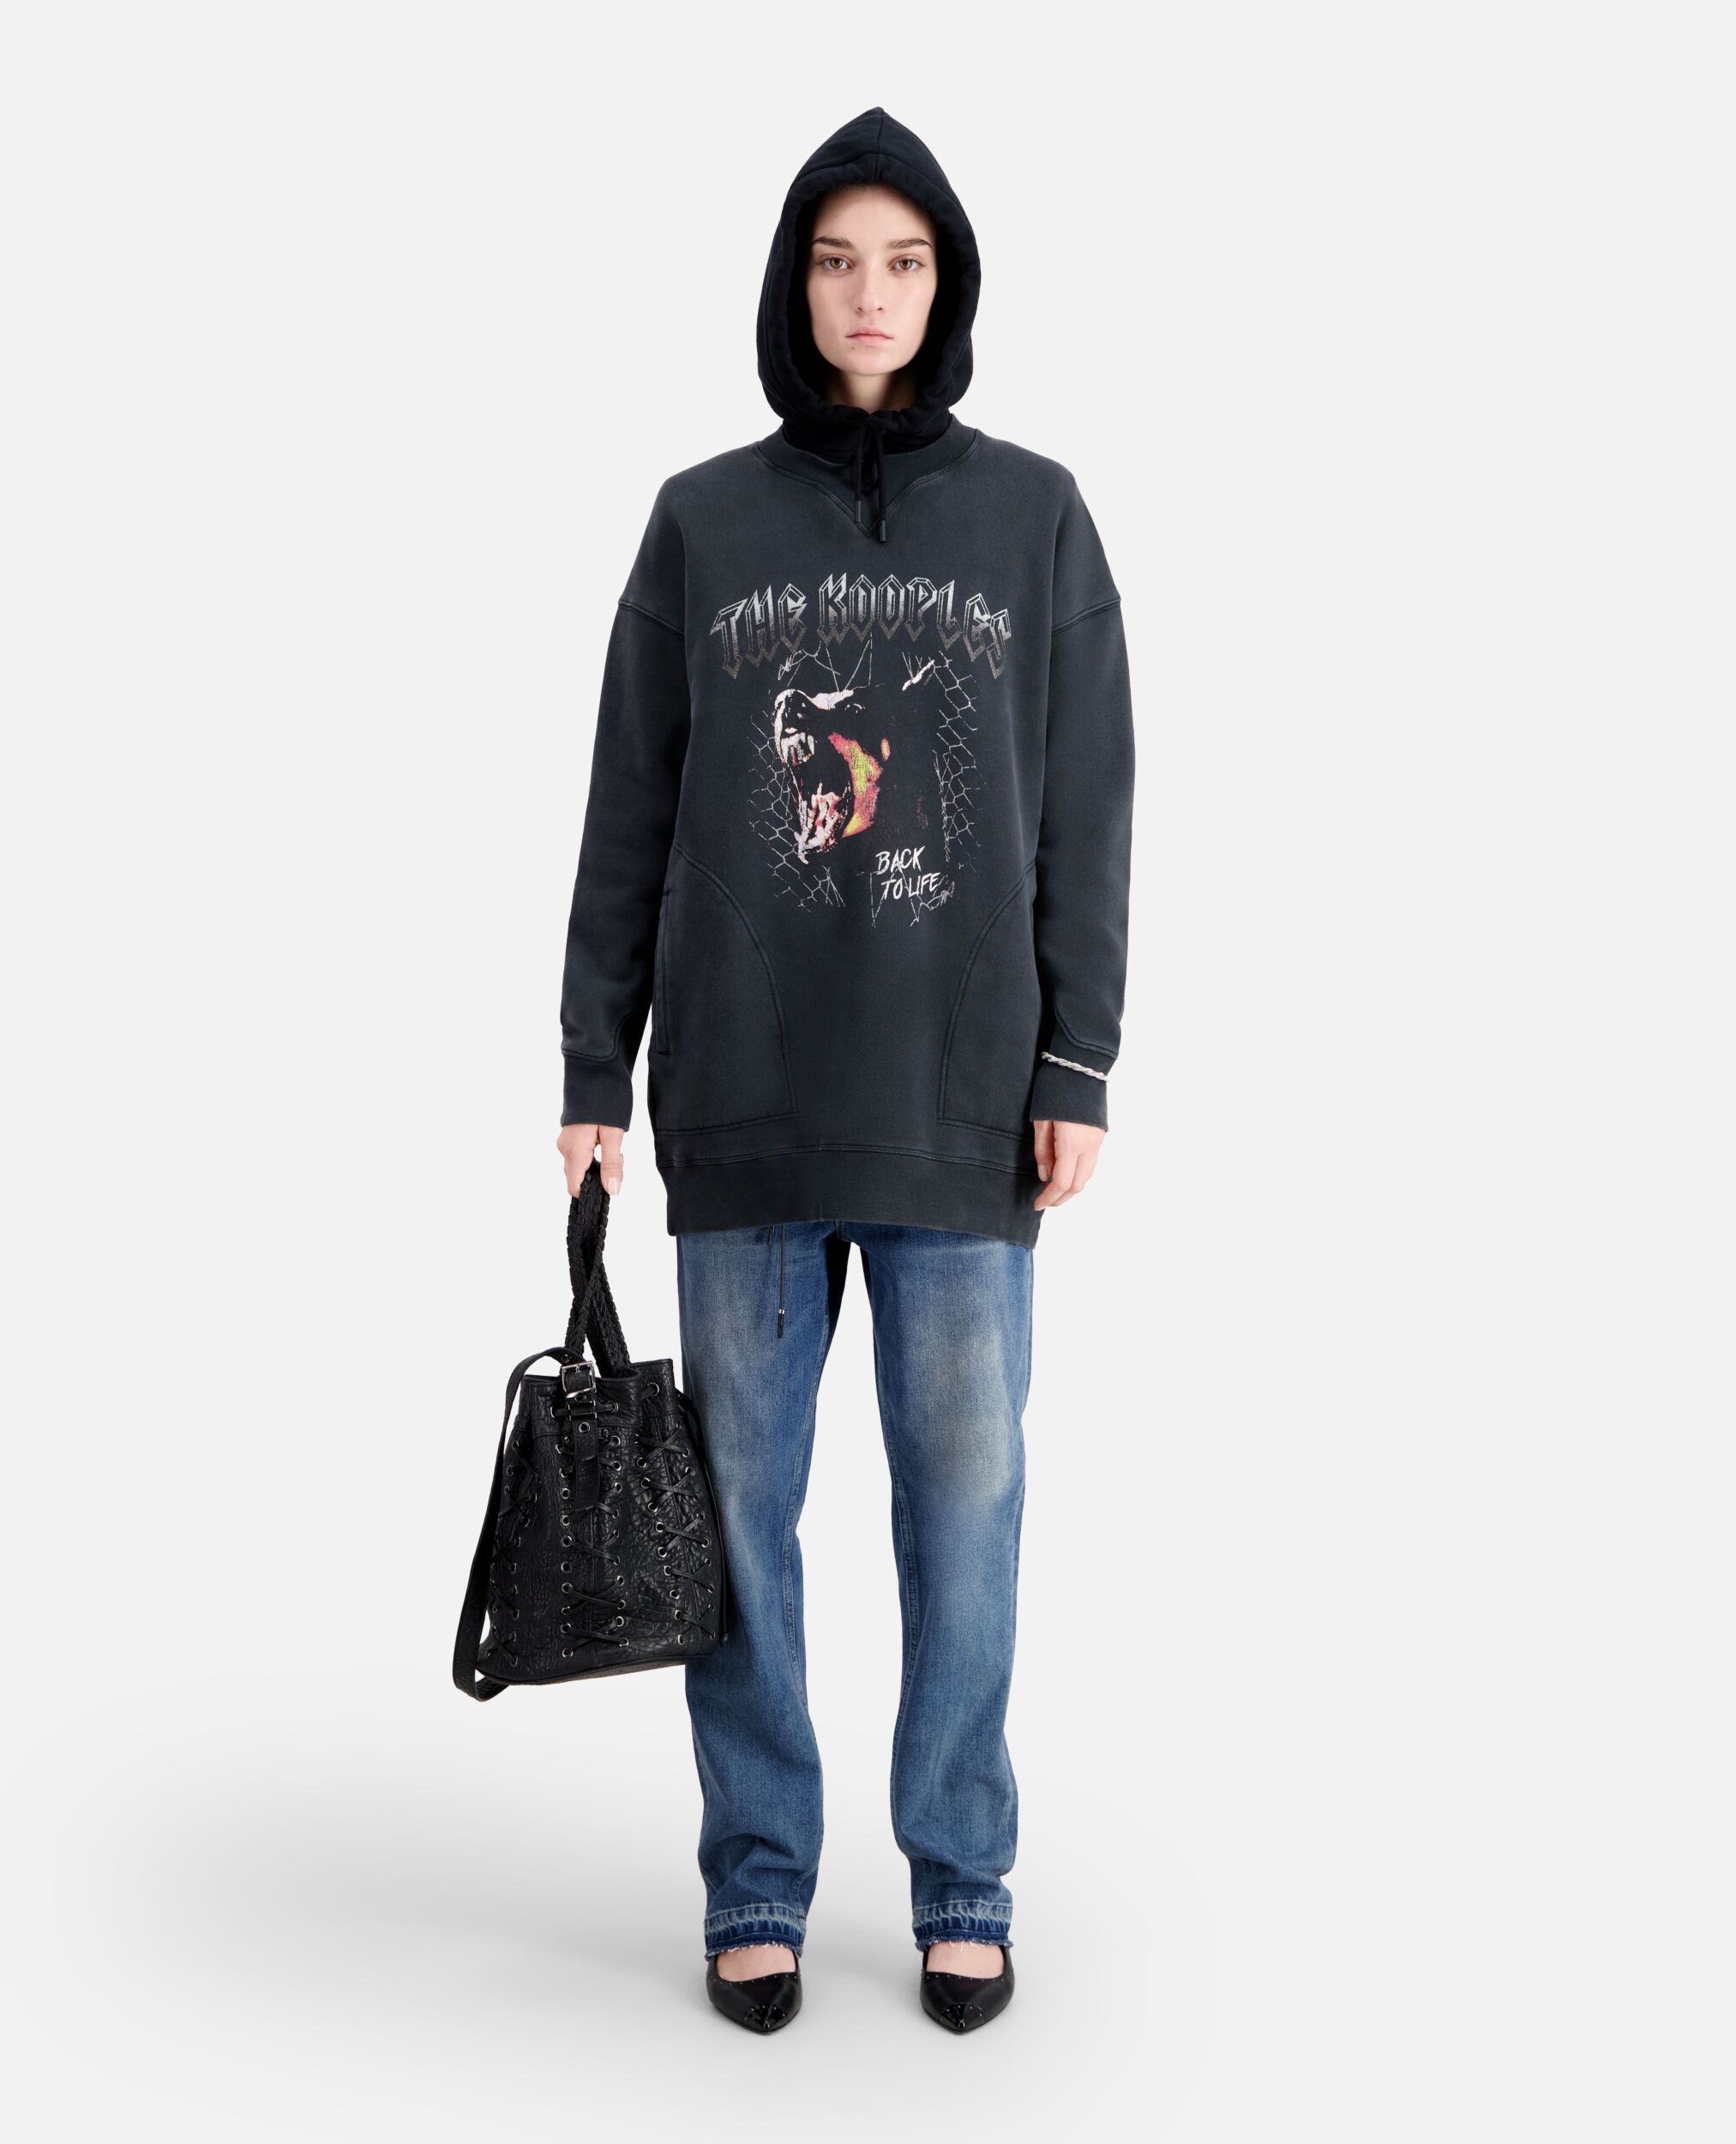 Robe Femme type sweatshirt noire avec sérigraphie Barking dog, BLACK WASHED, hi-res image number null